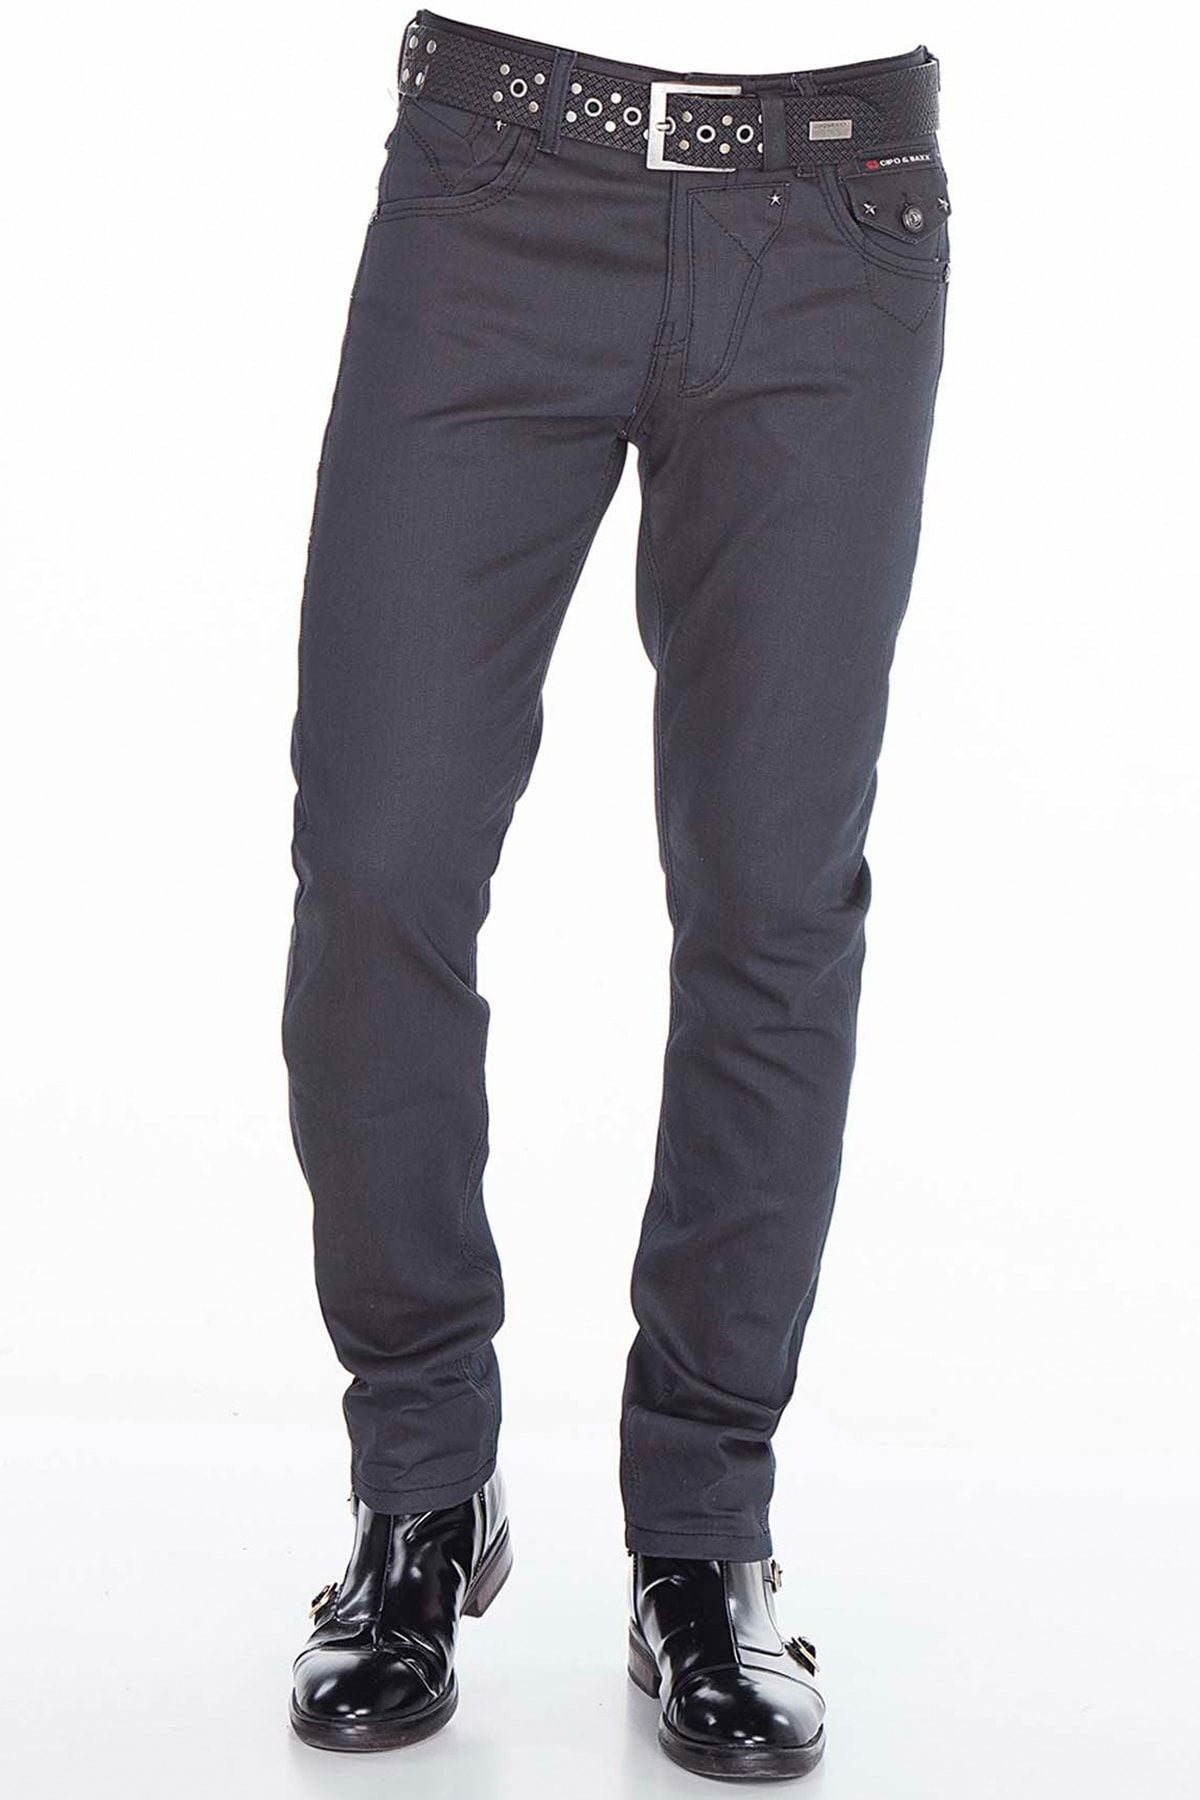 CD398 Comfortabele jeans voor heren in een moderne look